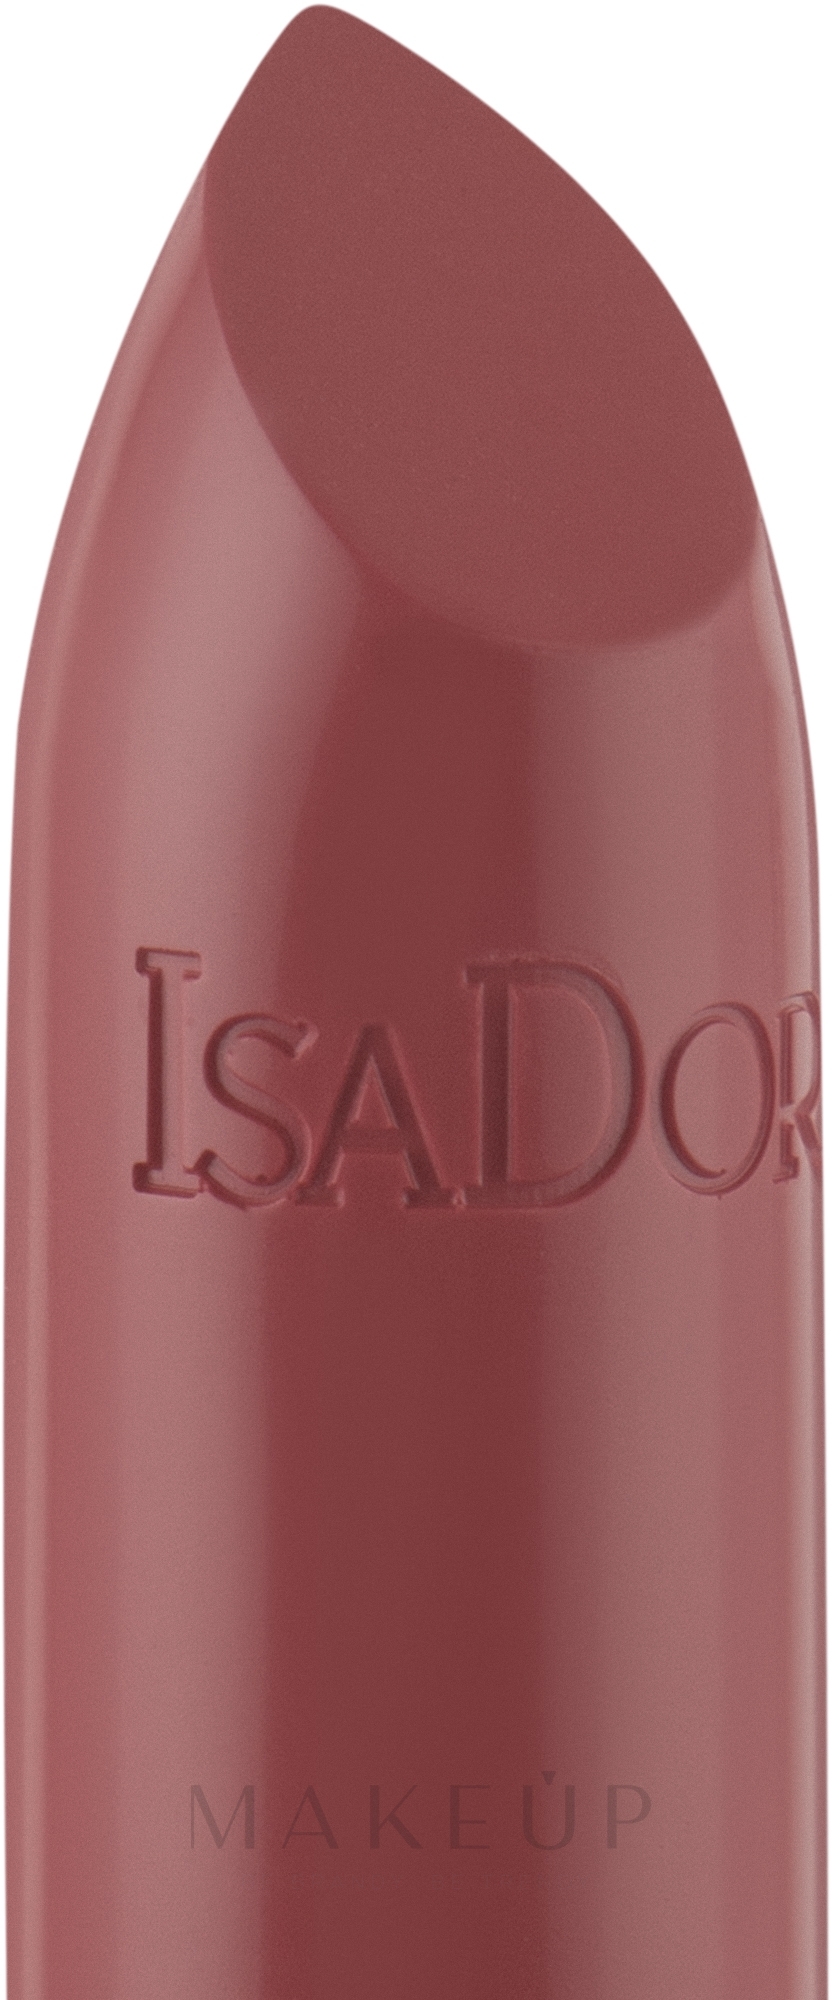 Feuchtigkeitsspendender Lippenstift - IsaDora Perfect Moisture Lipstick — Bild 11 - True Blush